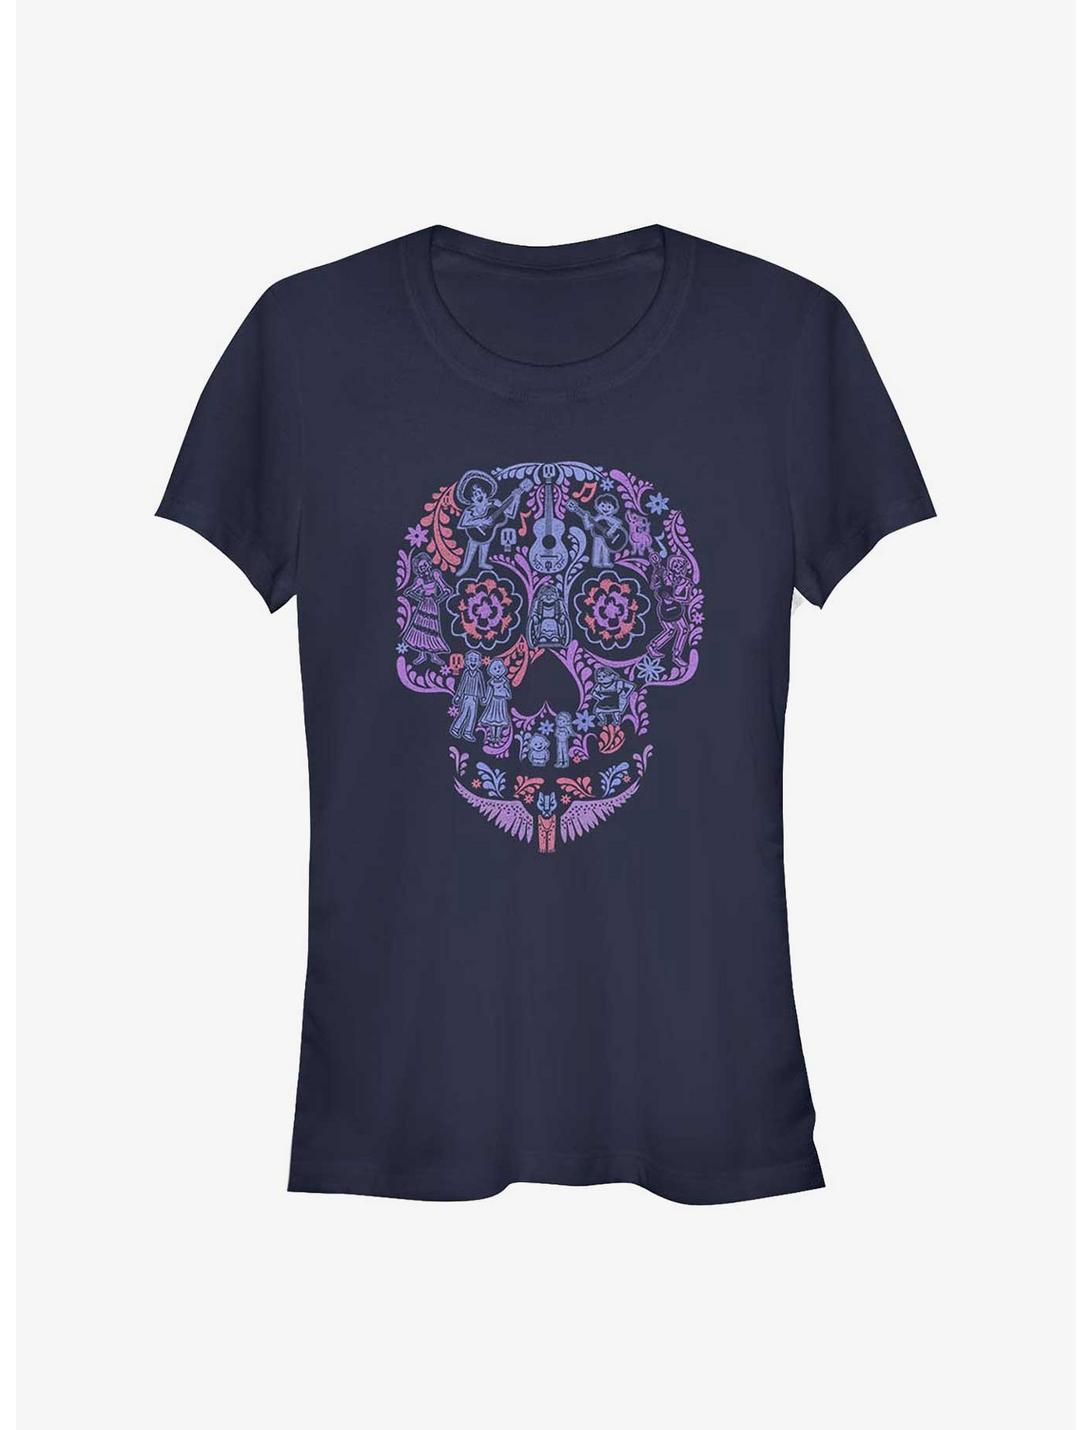 Disney Pixar Coco Skull Womens T-Shirt, NAVY, hi-res